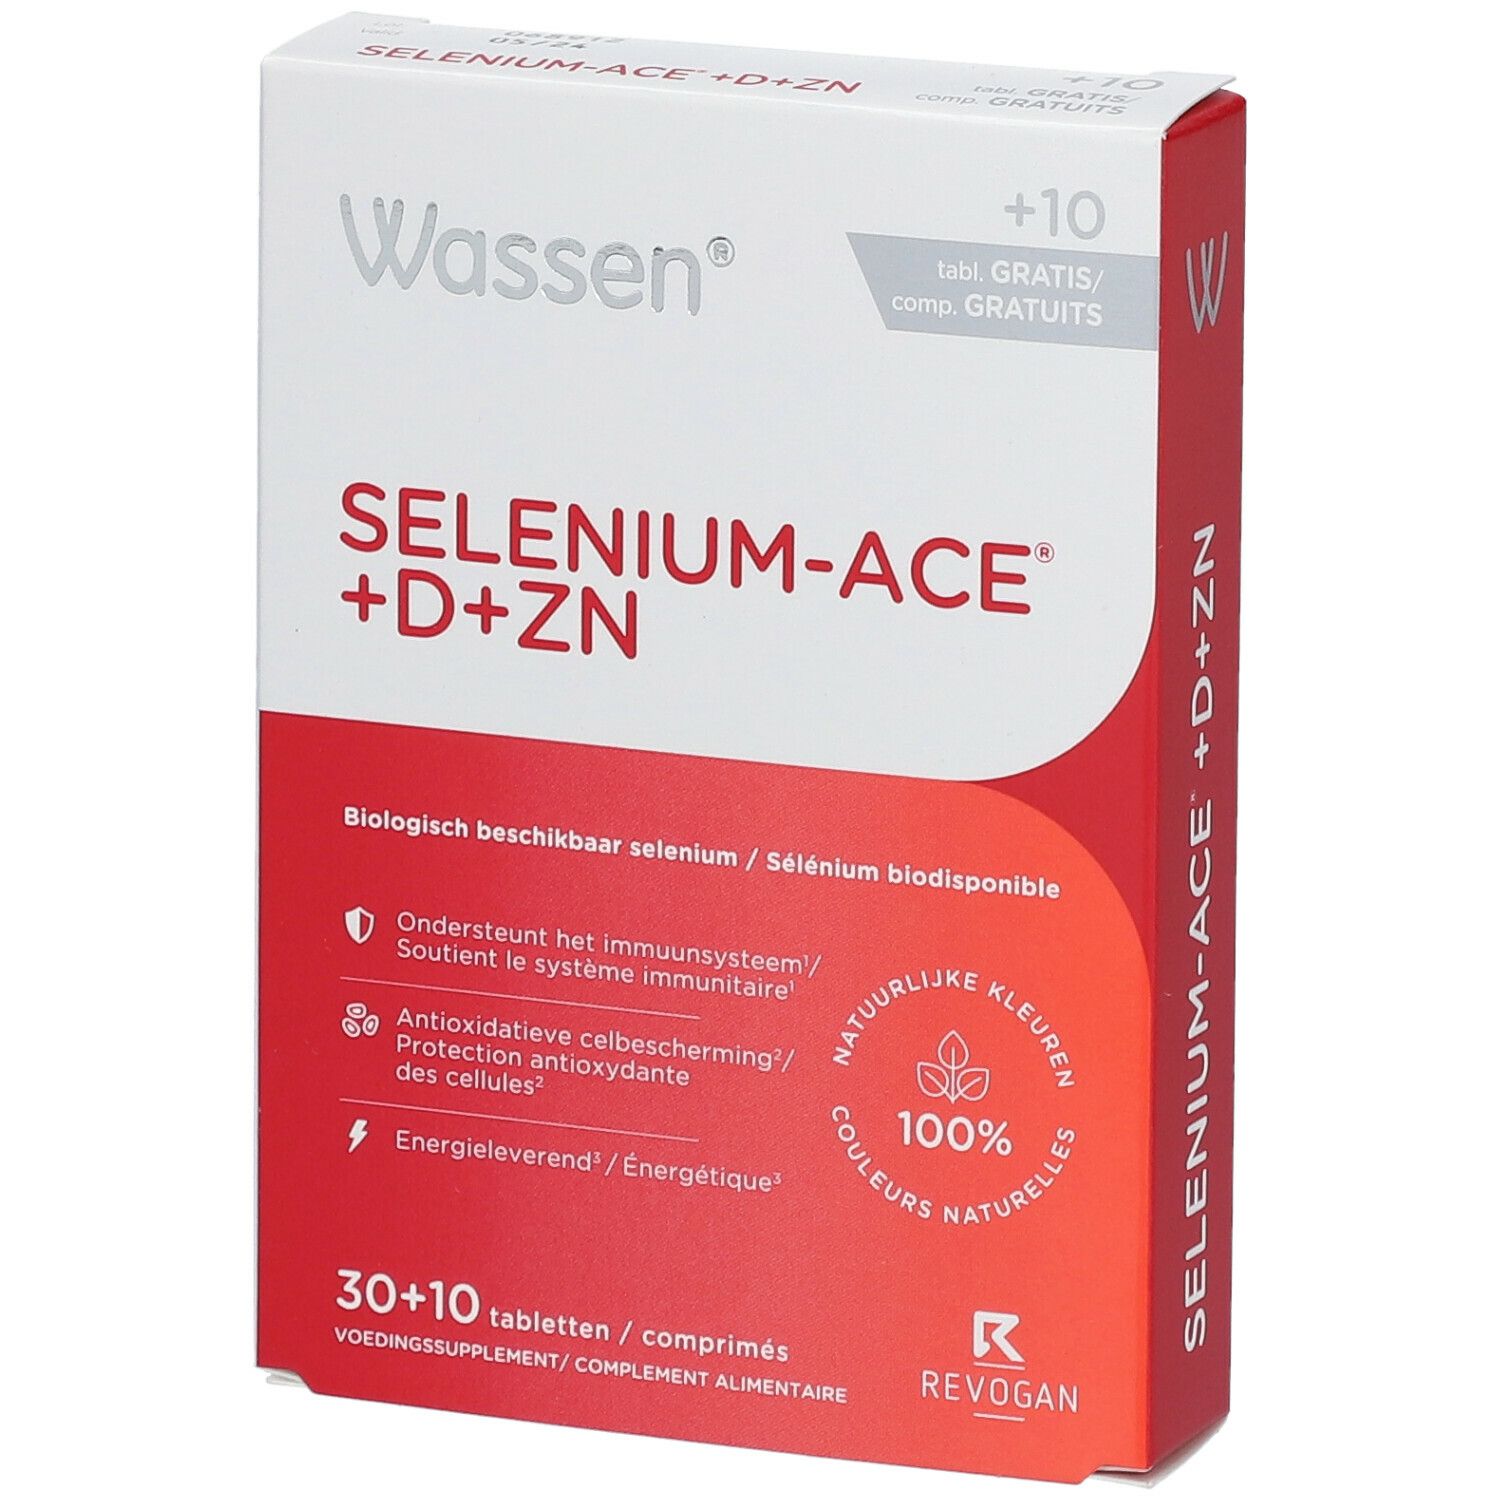 Wassen® Selenium-Ace® +D+Zn